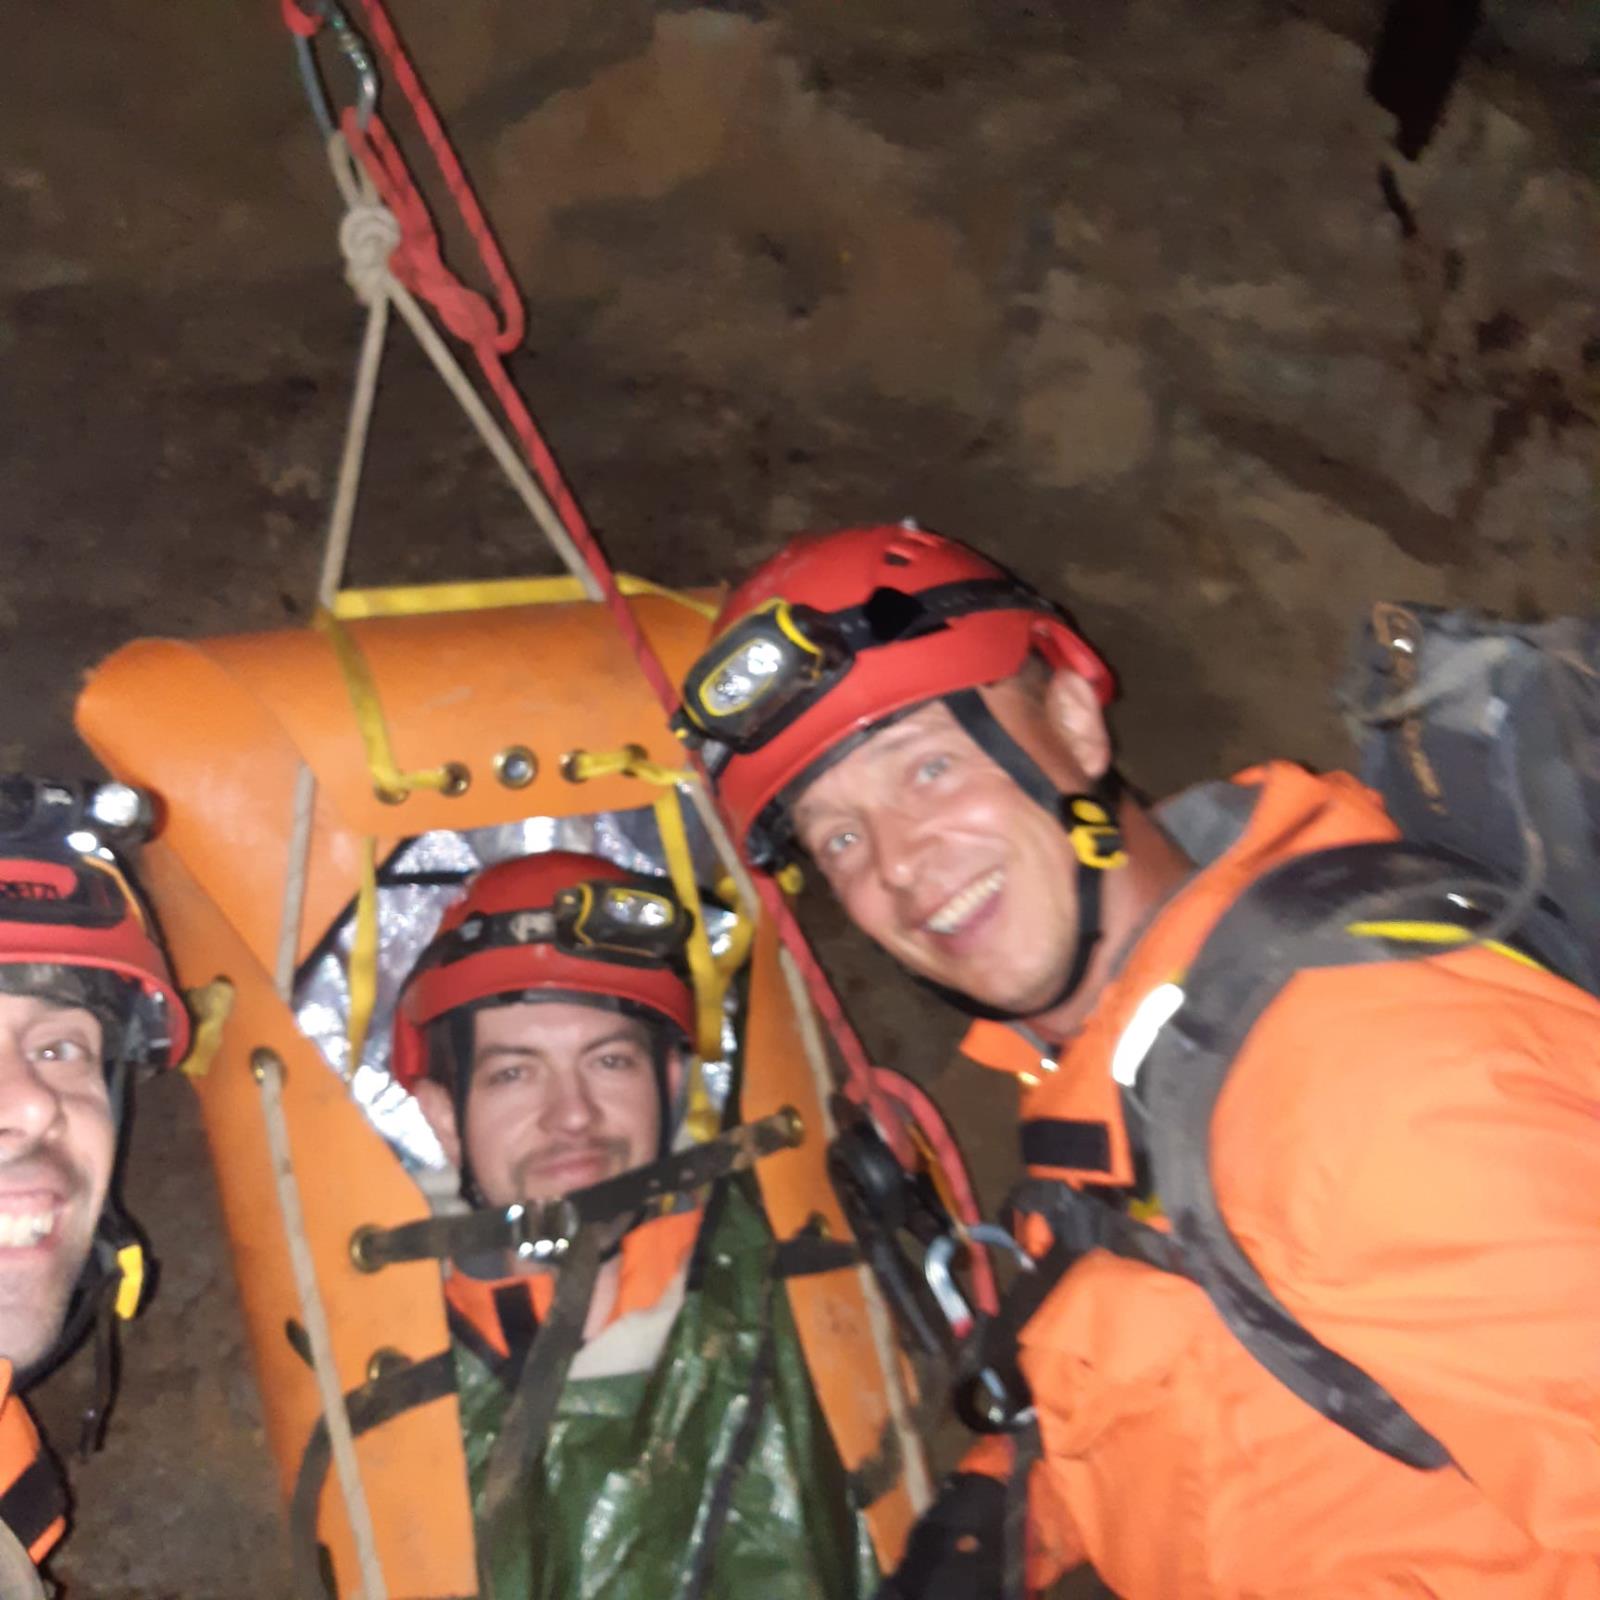 005-Výcvik kolínských lezců v podzemí.jpg